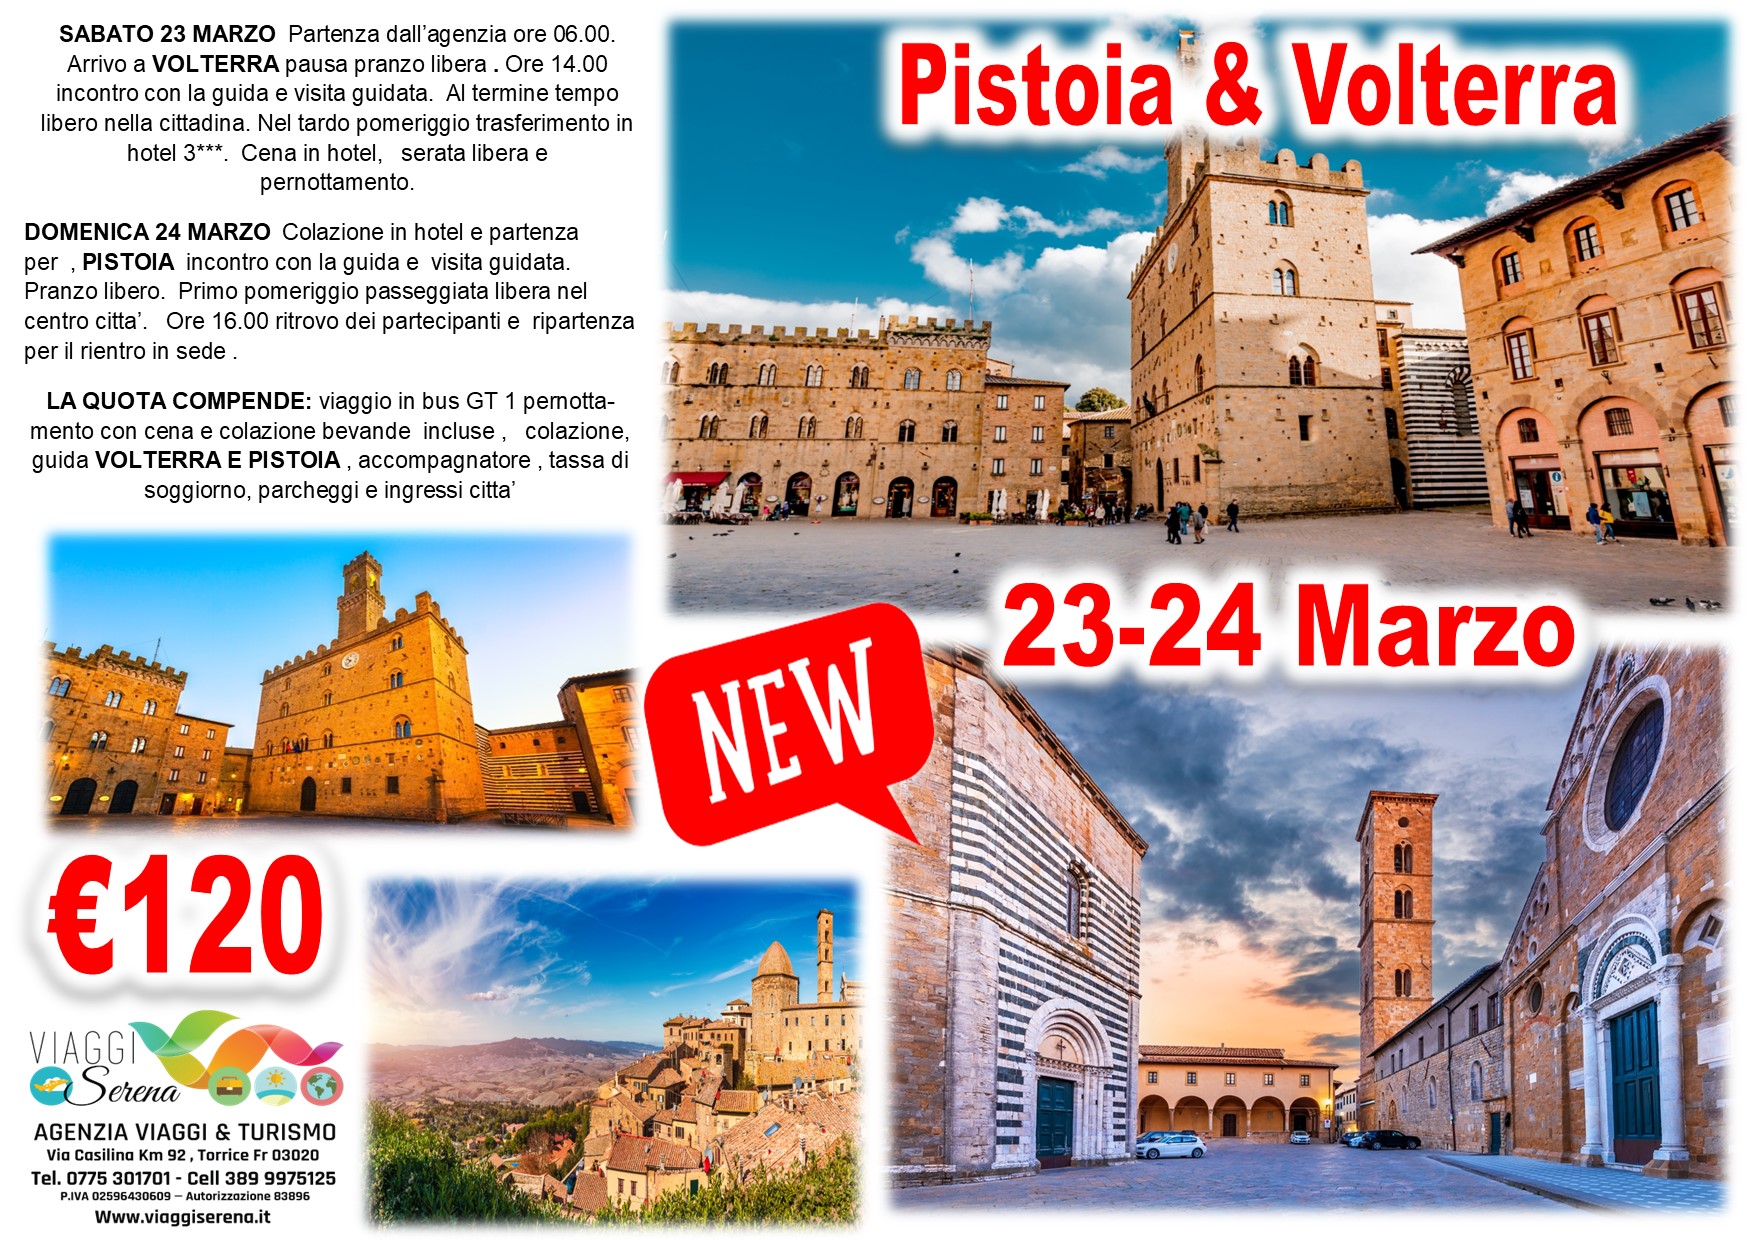 Viaggi di gruppo: Pistoia & Volterra 23-24 Marzo €120,00